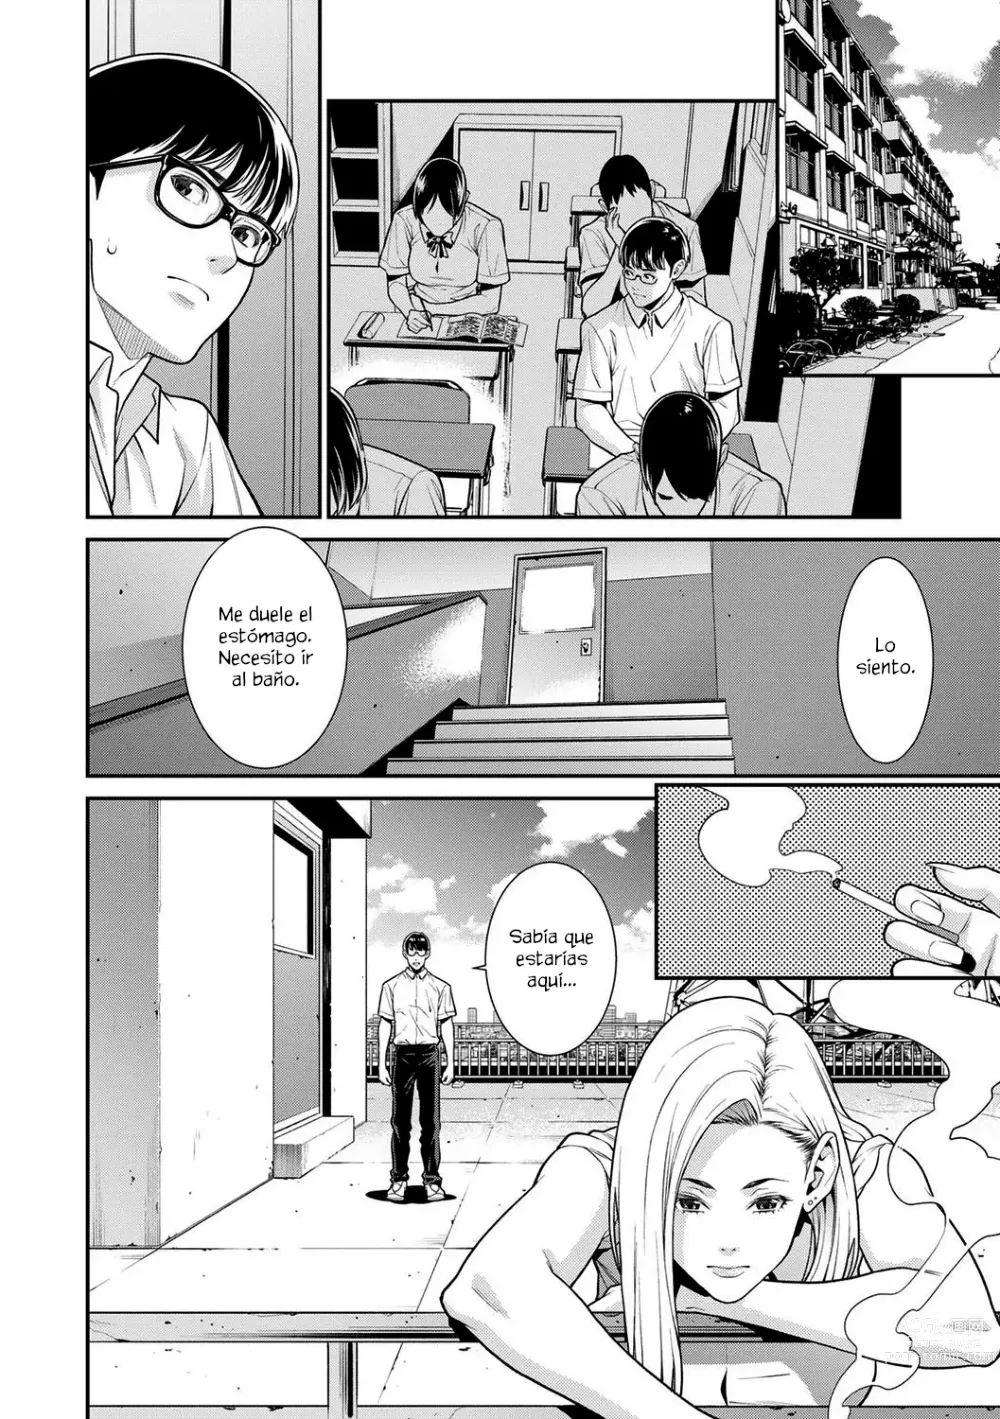 Page 4 of manga Falsa